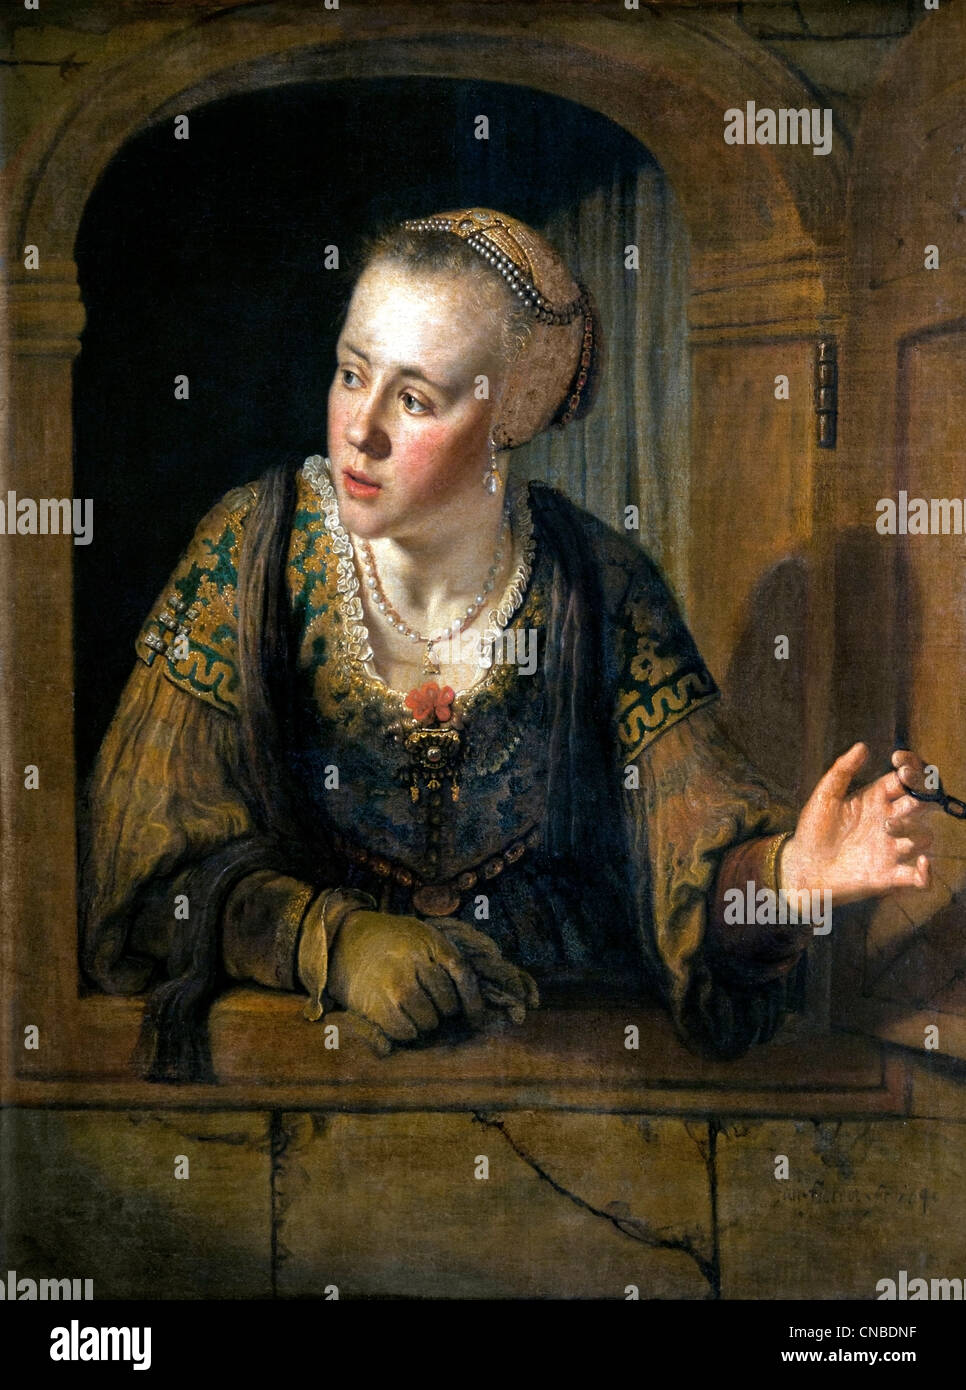 Jeune fille à la fenêtre - ragazza alla finestra 1640 da Jan VICTORS 1620 -1676 olandese Paesi Bassi Foto Stock